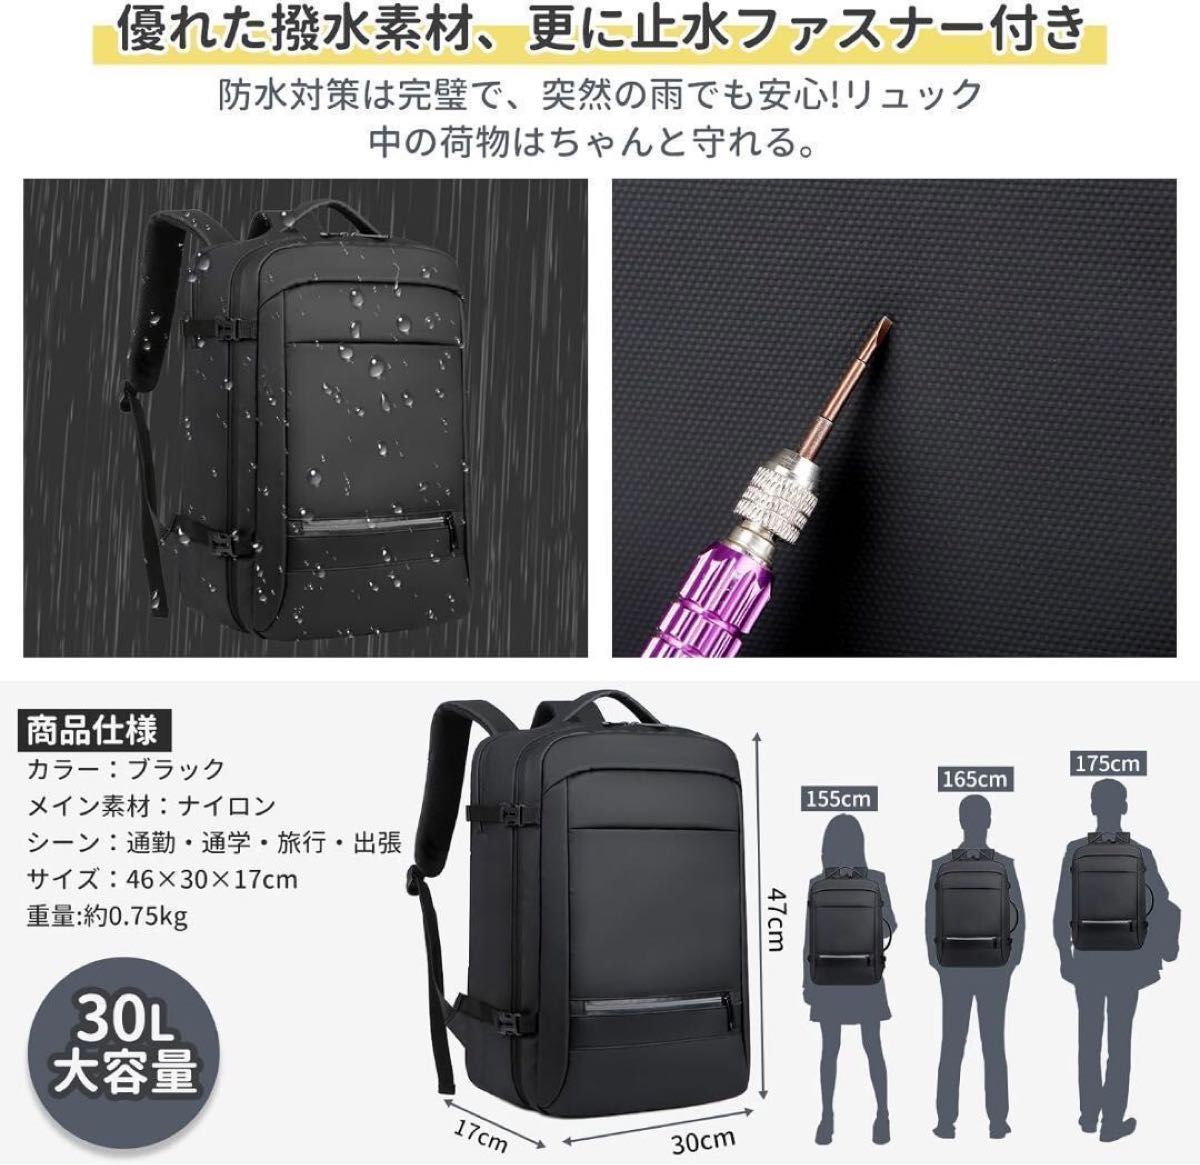 リュック 30L USB充電ポート 盗難防止ポケット キャリーオン 通勤 旅行 ビジネスリュック ビジネスバッグ